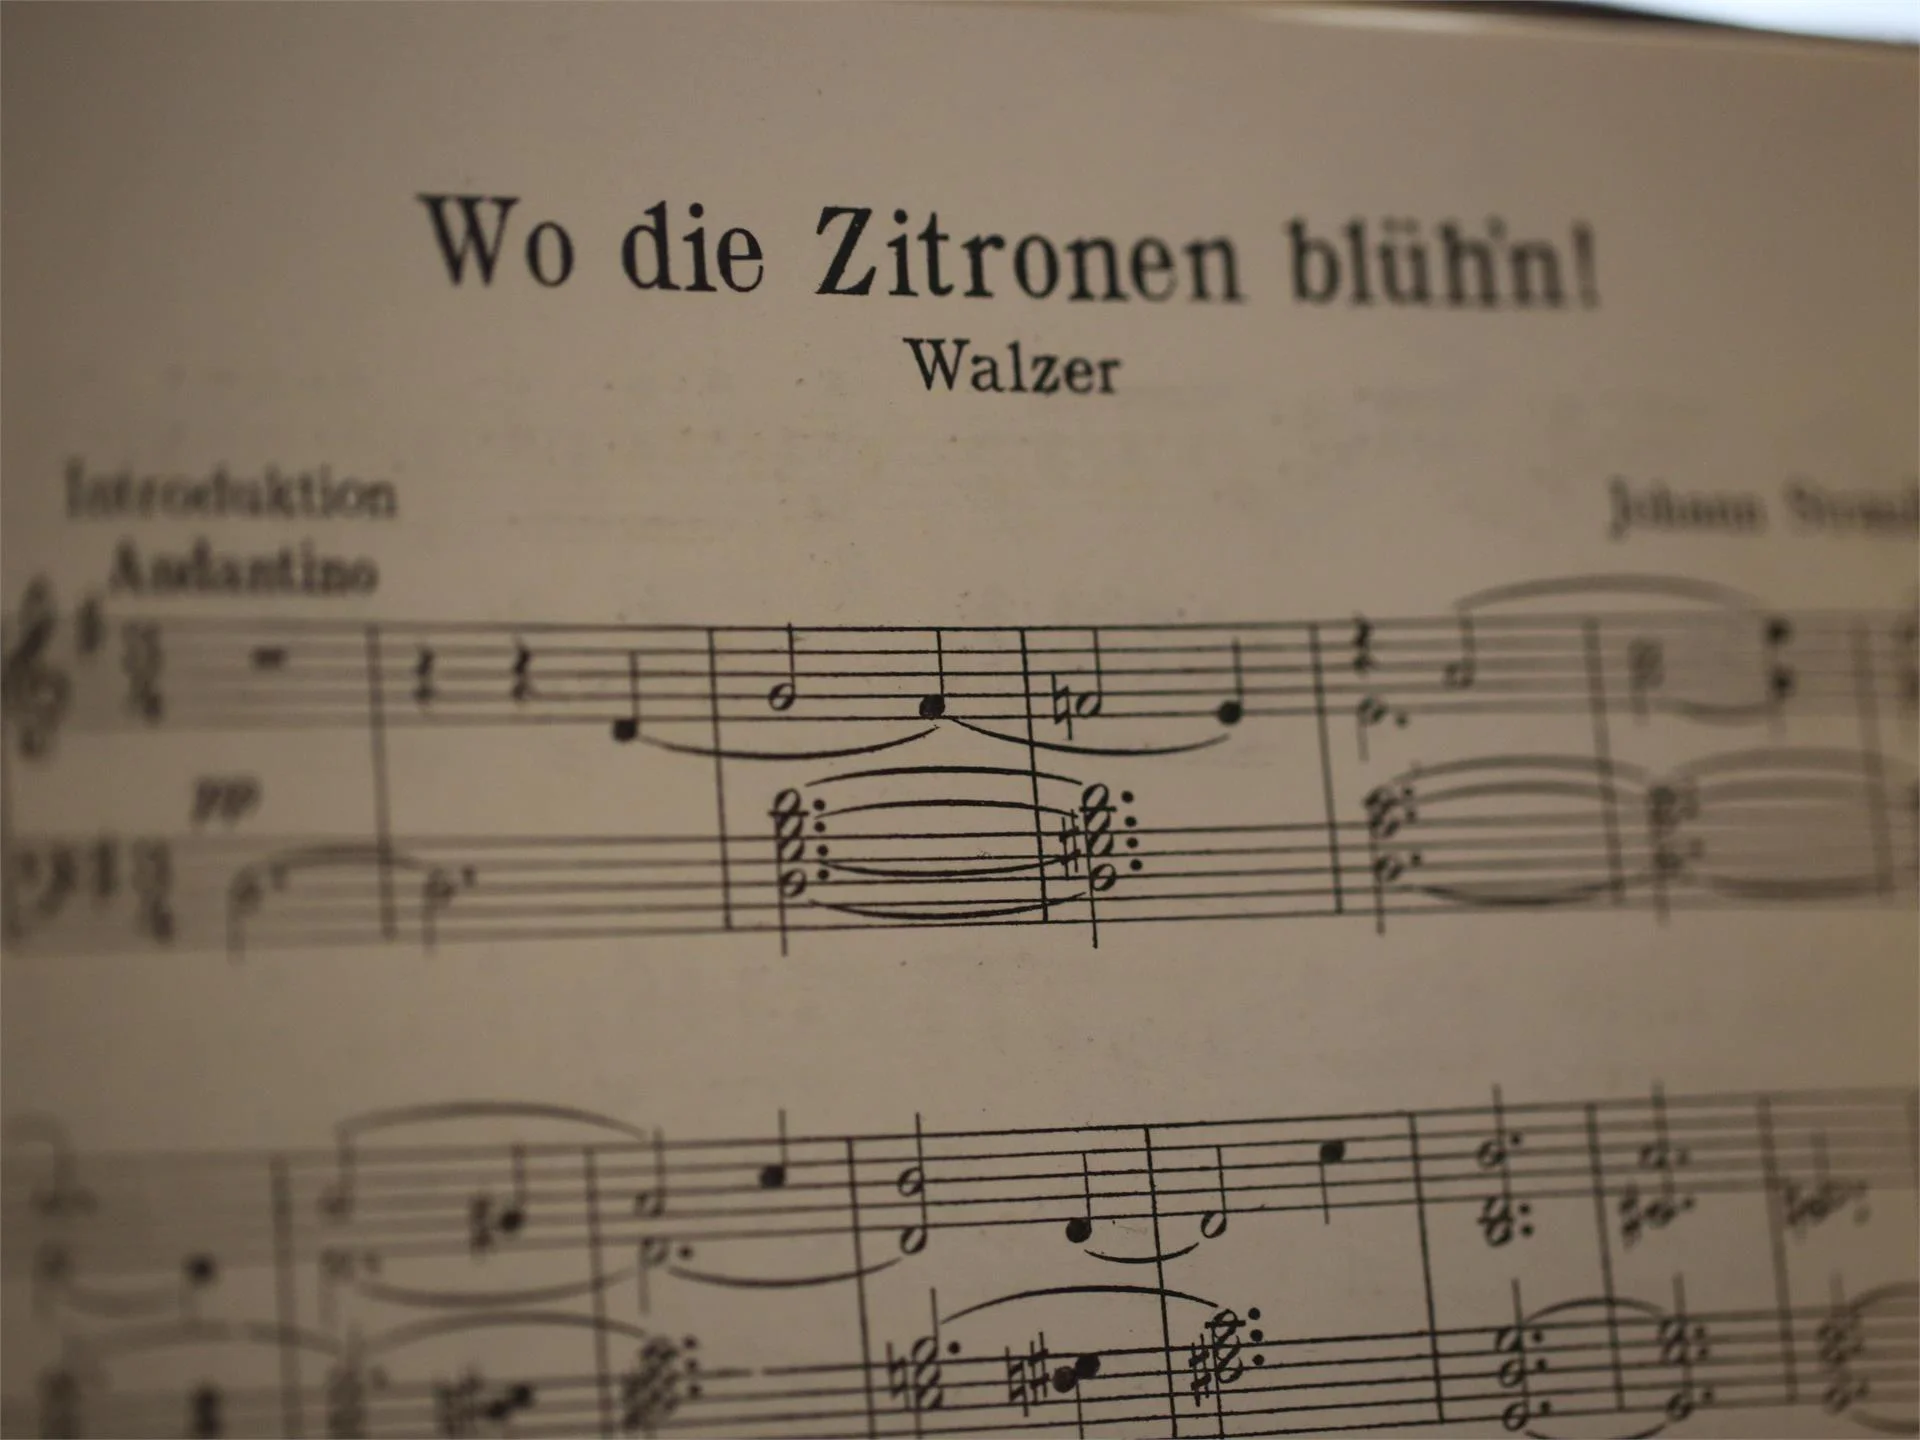 Music for wind by the "Partschinser Böhmischen" with heart and momentum Partschins/Parcines 2 suedtirol.info